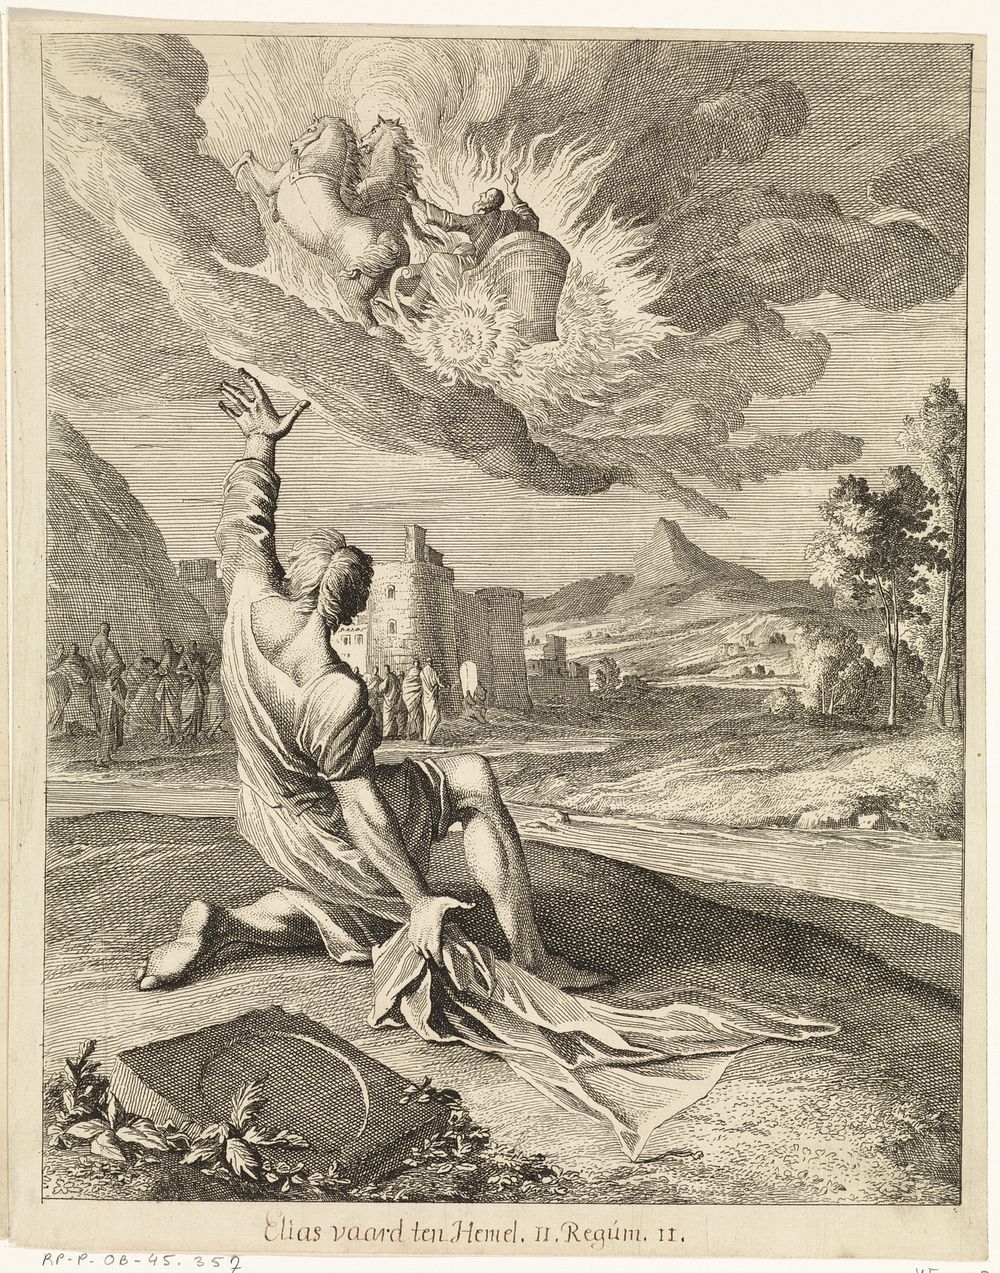 Elisa ziet de hemelvaart van Elia (1708) by Caspar Luyken and Christoph Weigel